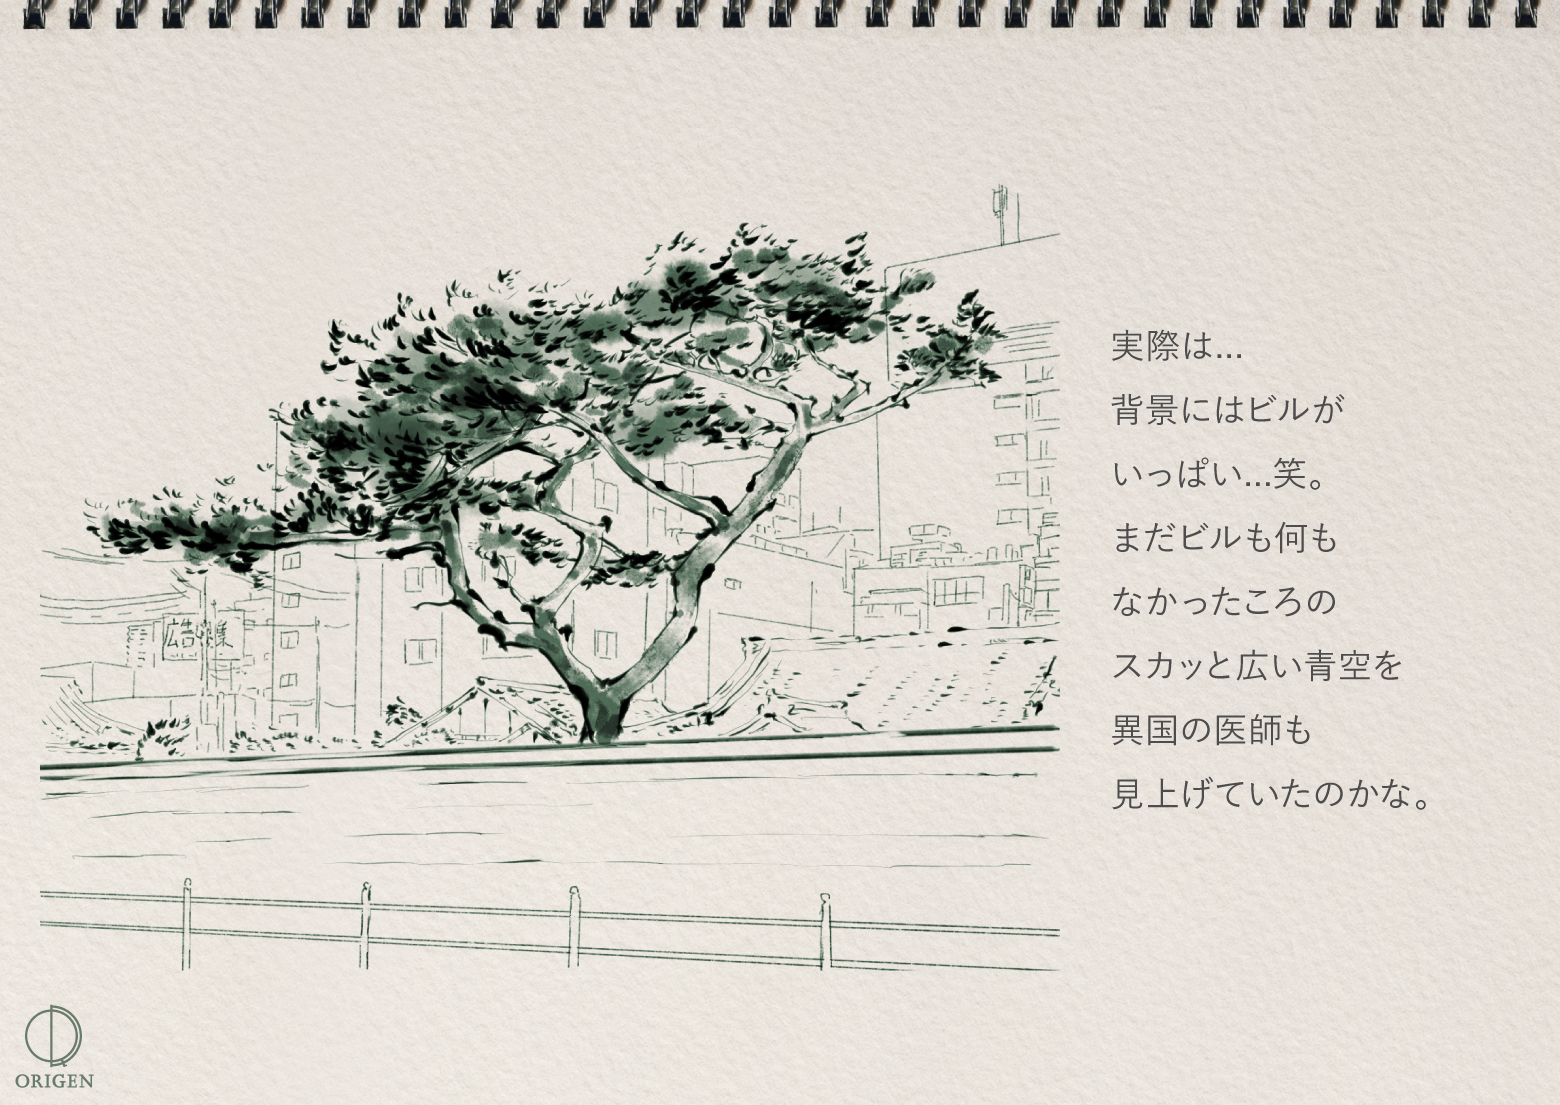 上本町 お寺の松の木の背景